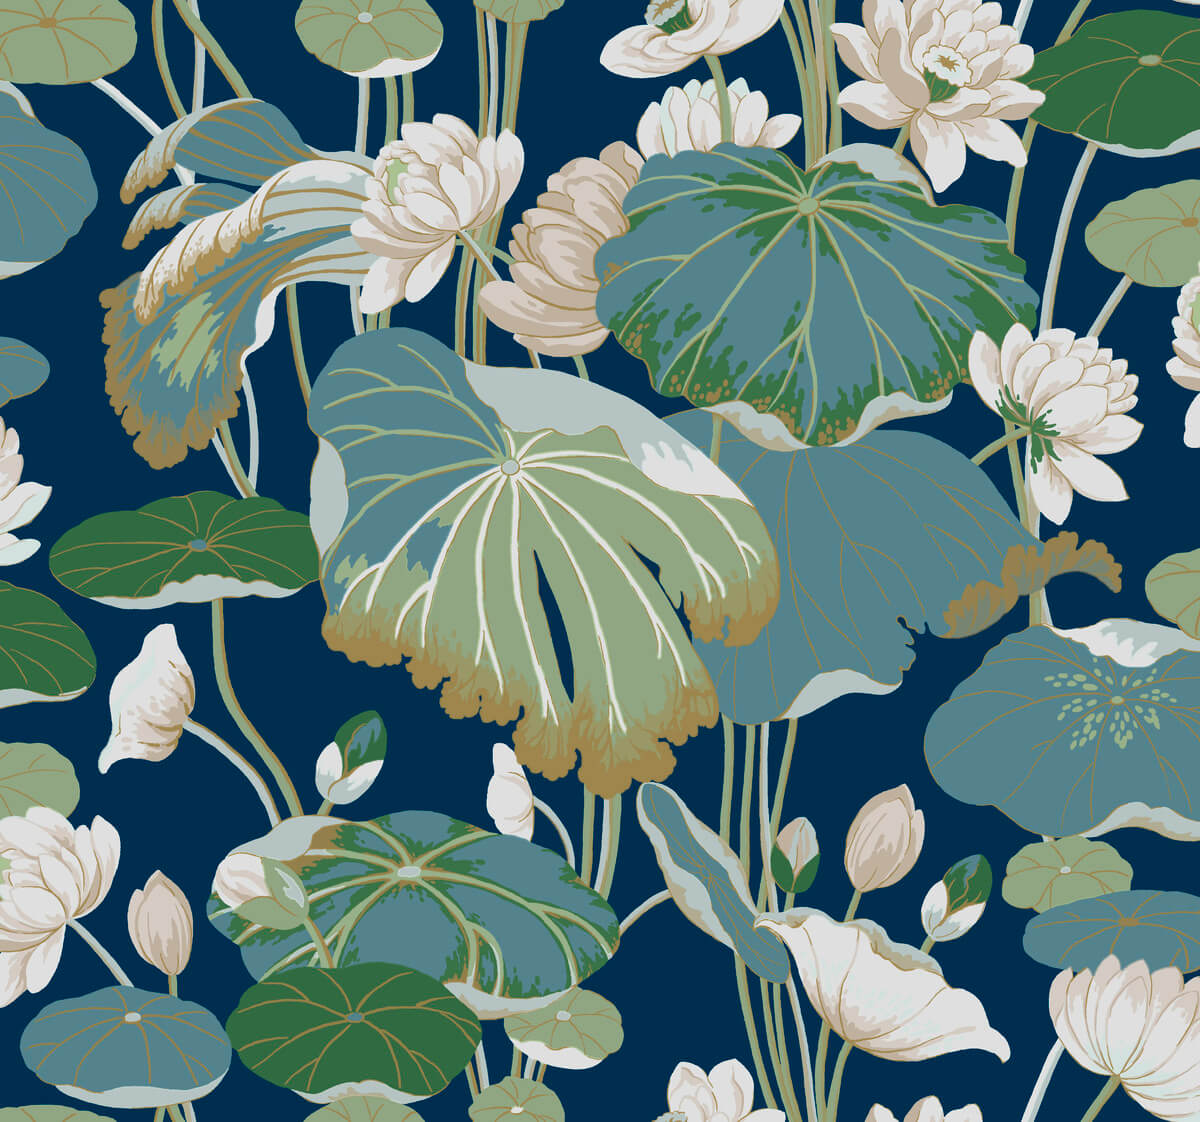 Greenhouse Lotus Pond Wallpaper - Indigo & Gold